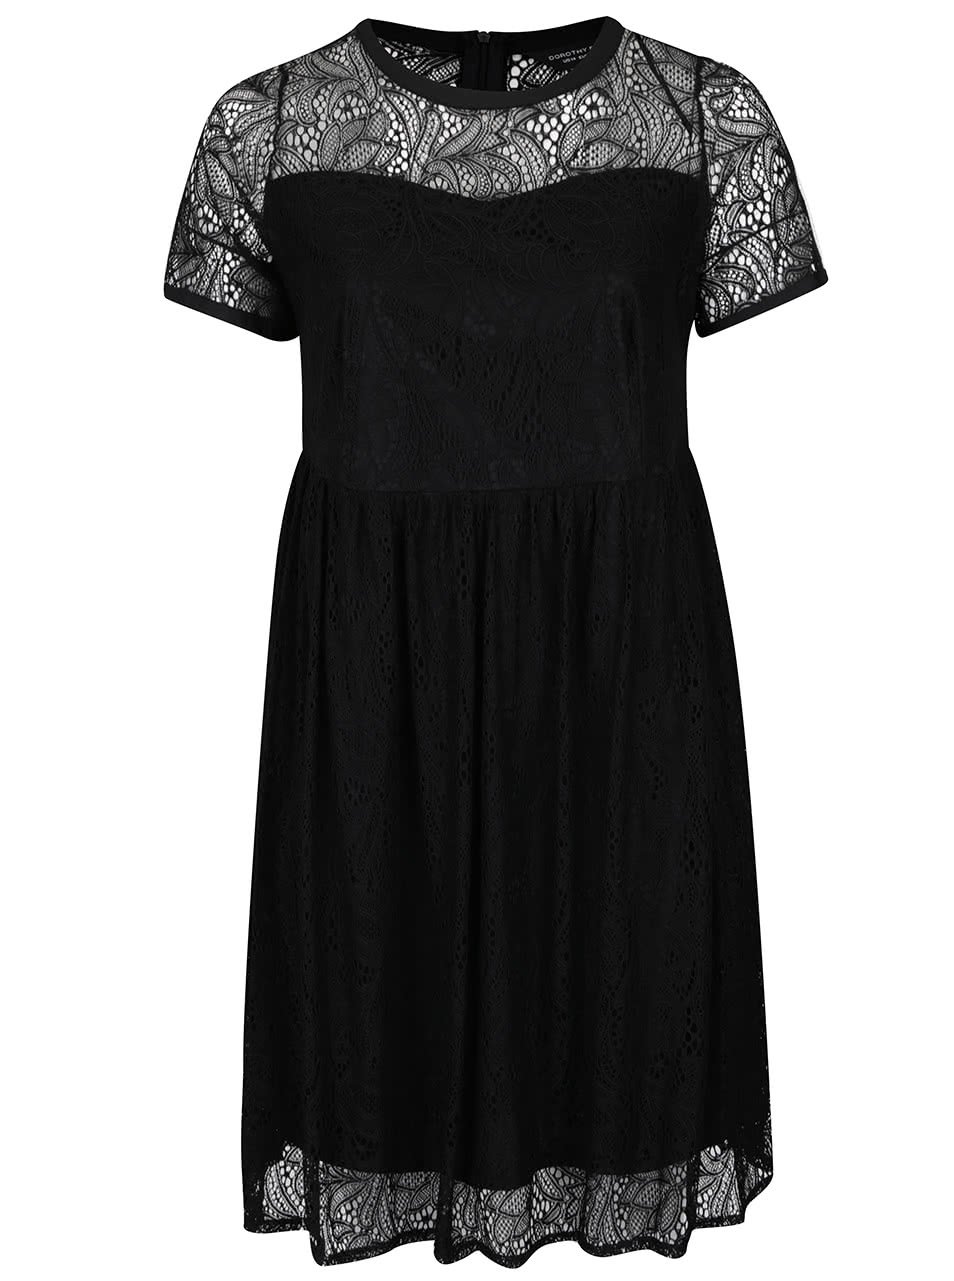 Černé krajkové šaty s krátkými rukávy Dorothy Perkins Curve